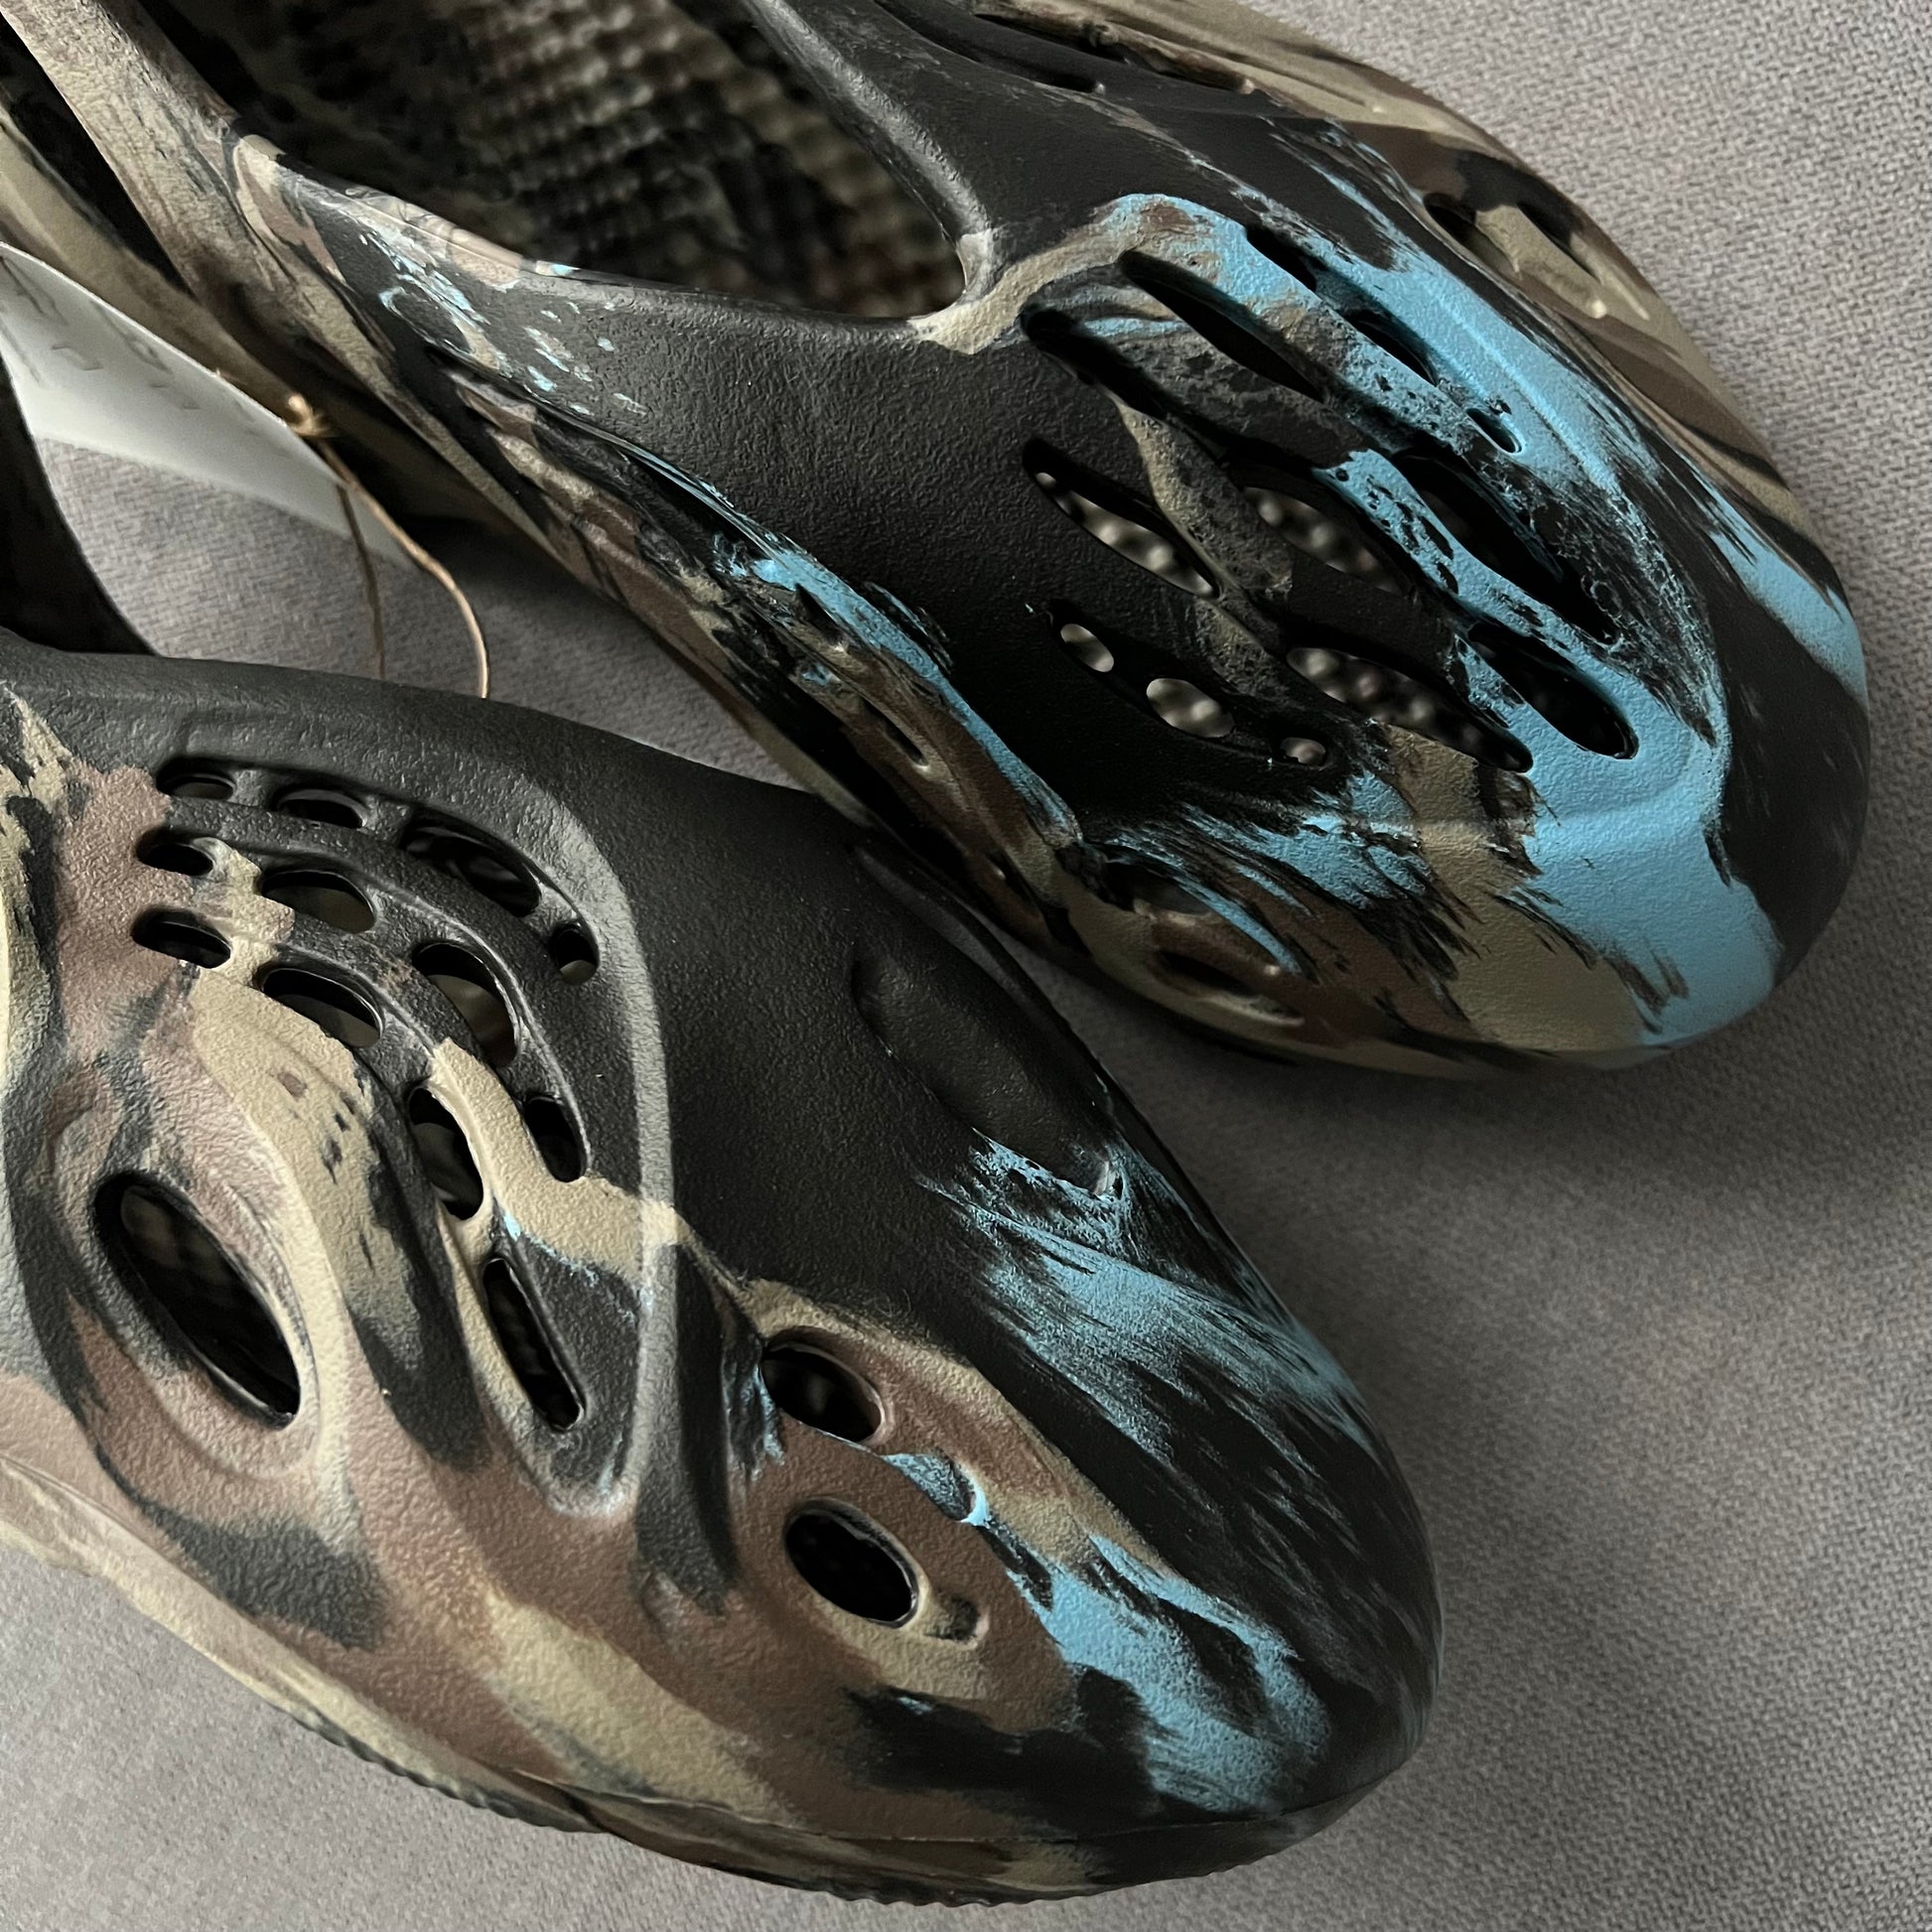 adidas YEEZY Foam Runner MX Carbon First Look